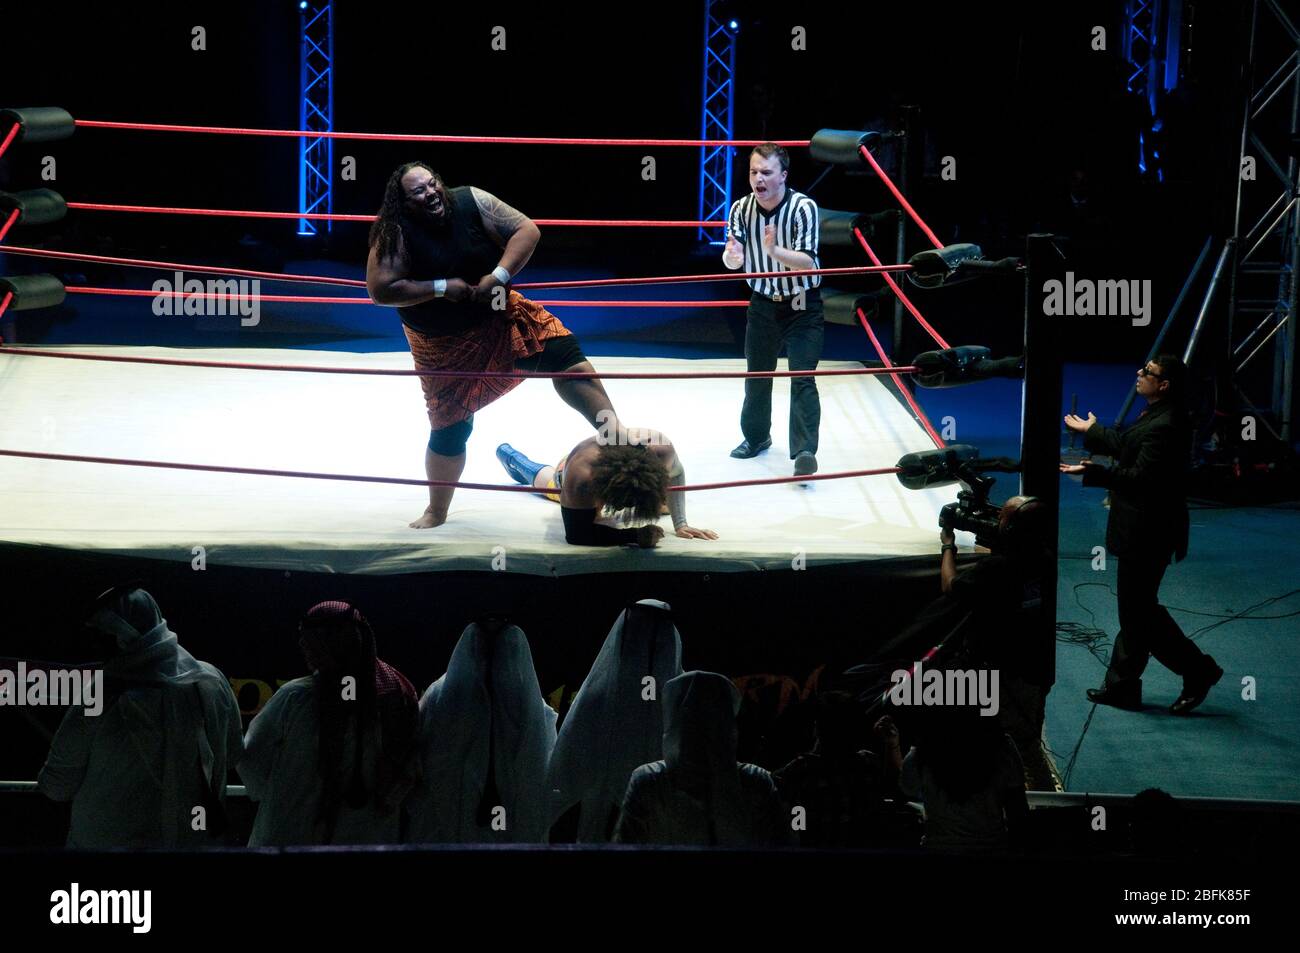 Zwei professionelle Ringer kämpfen im Ring neben einem Schiedsrichter und einem Manager bei einem Live-Outdoor-Wrestling-Match in der Stadt Doha in Katar. Stockfoto